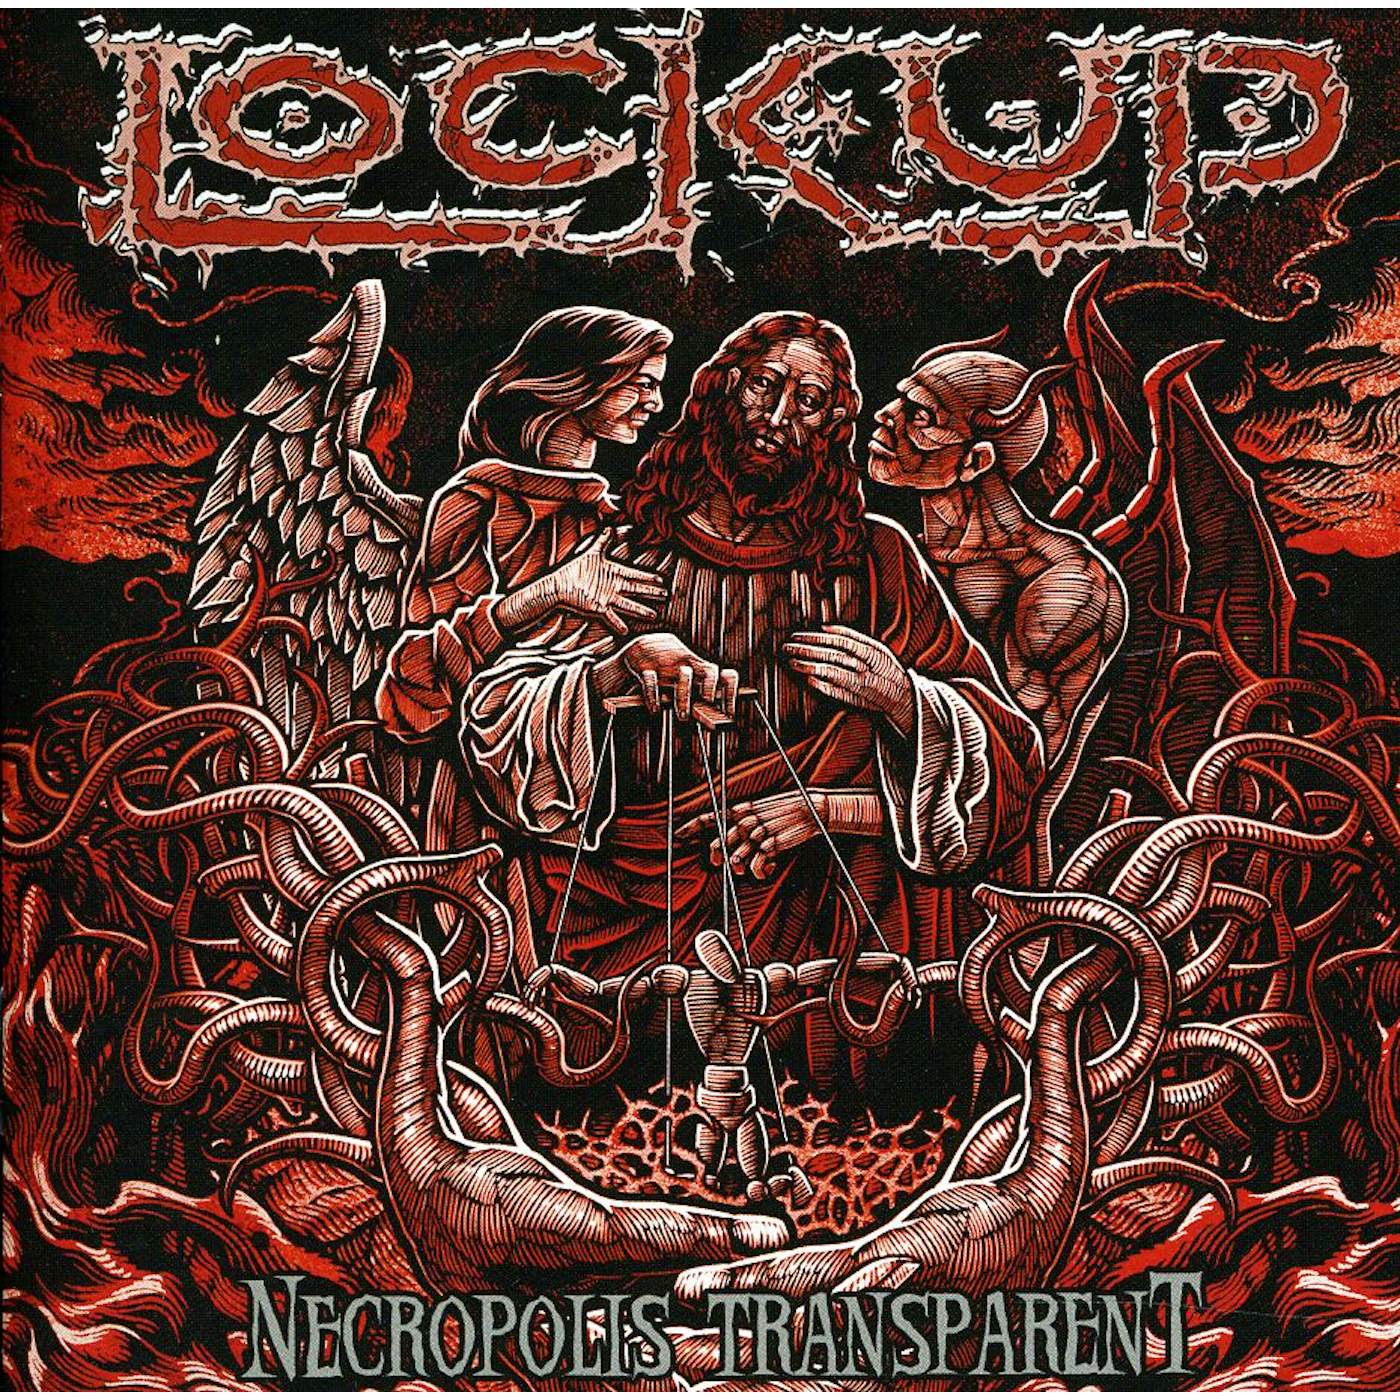 Lock Up NECROPOLIS TRANSPARENT CD